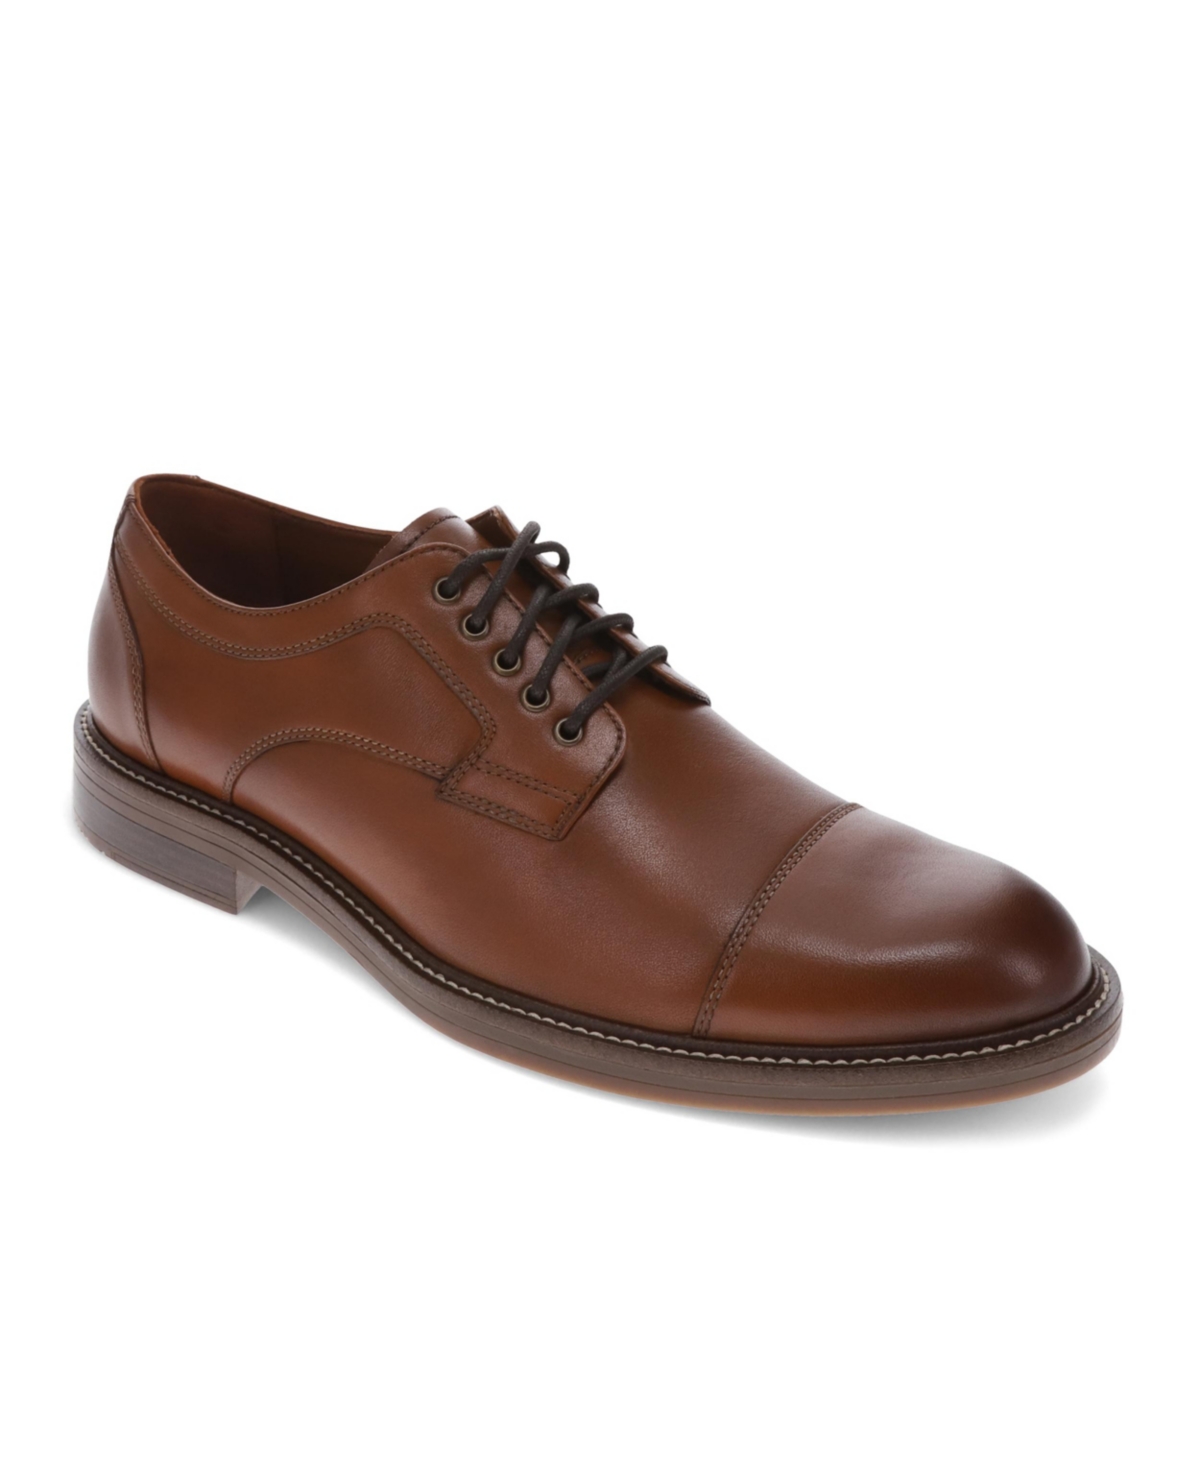 Men's Longworth Oxford Shoes - Butterscotch